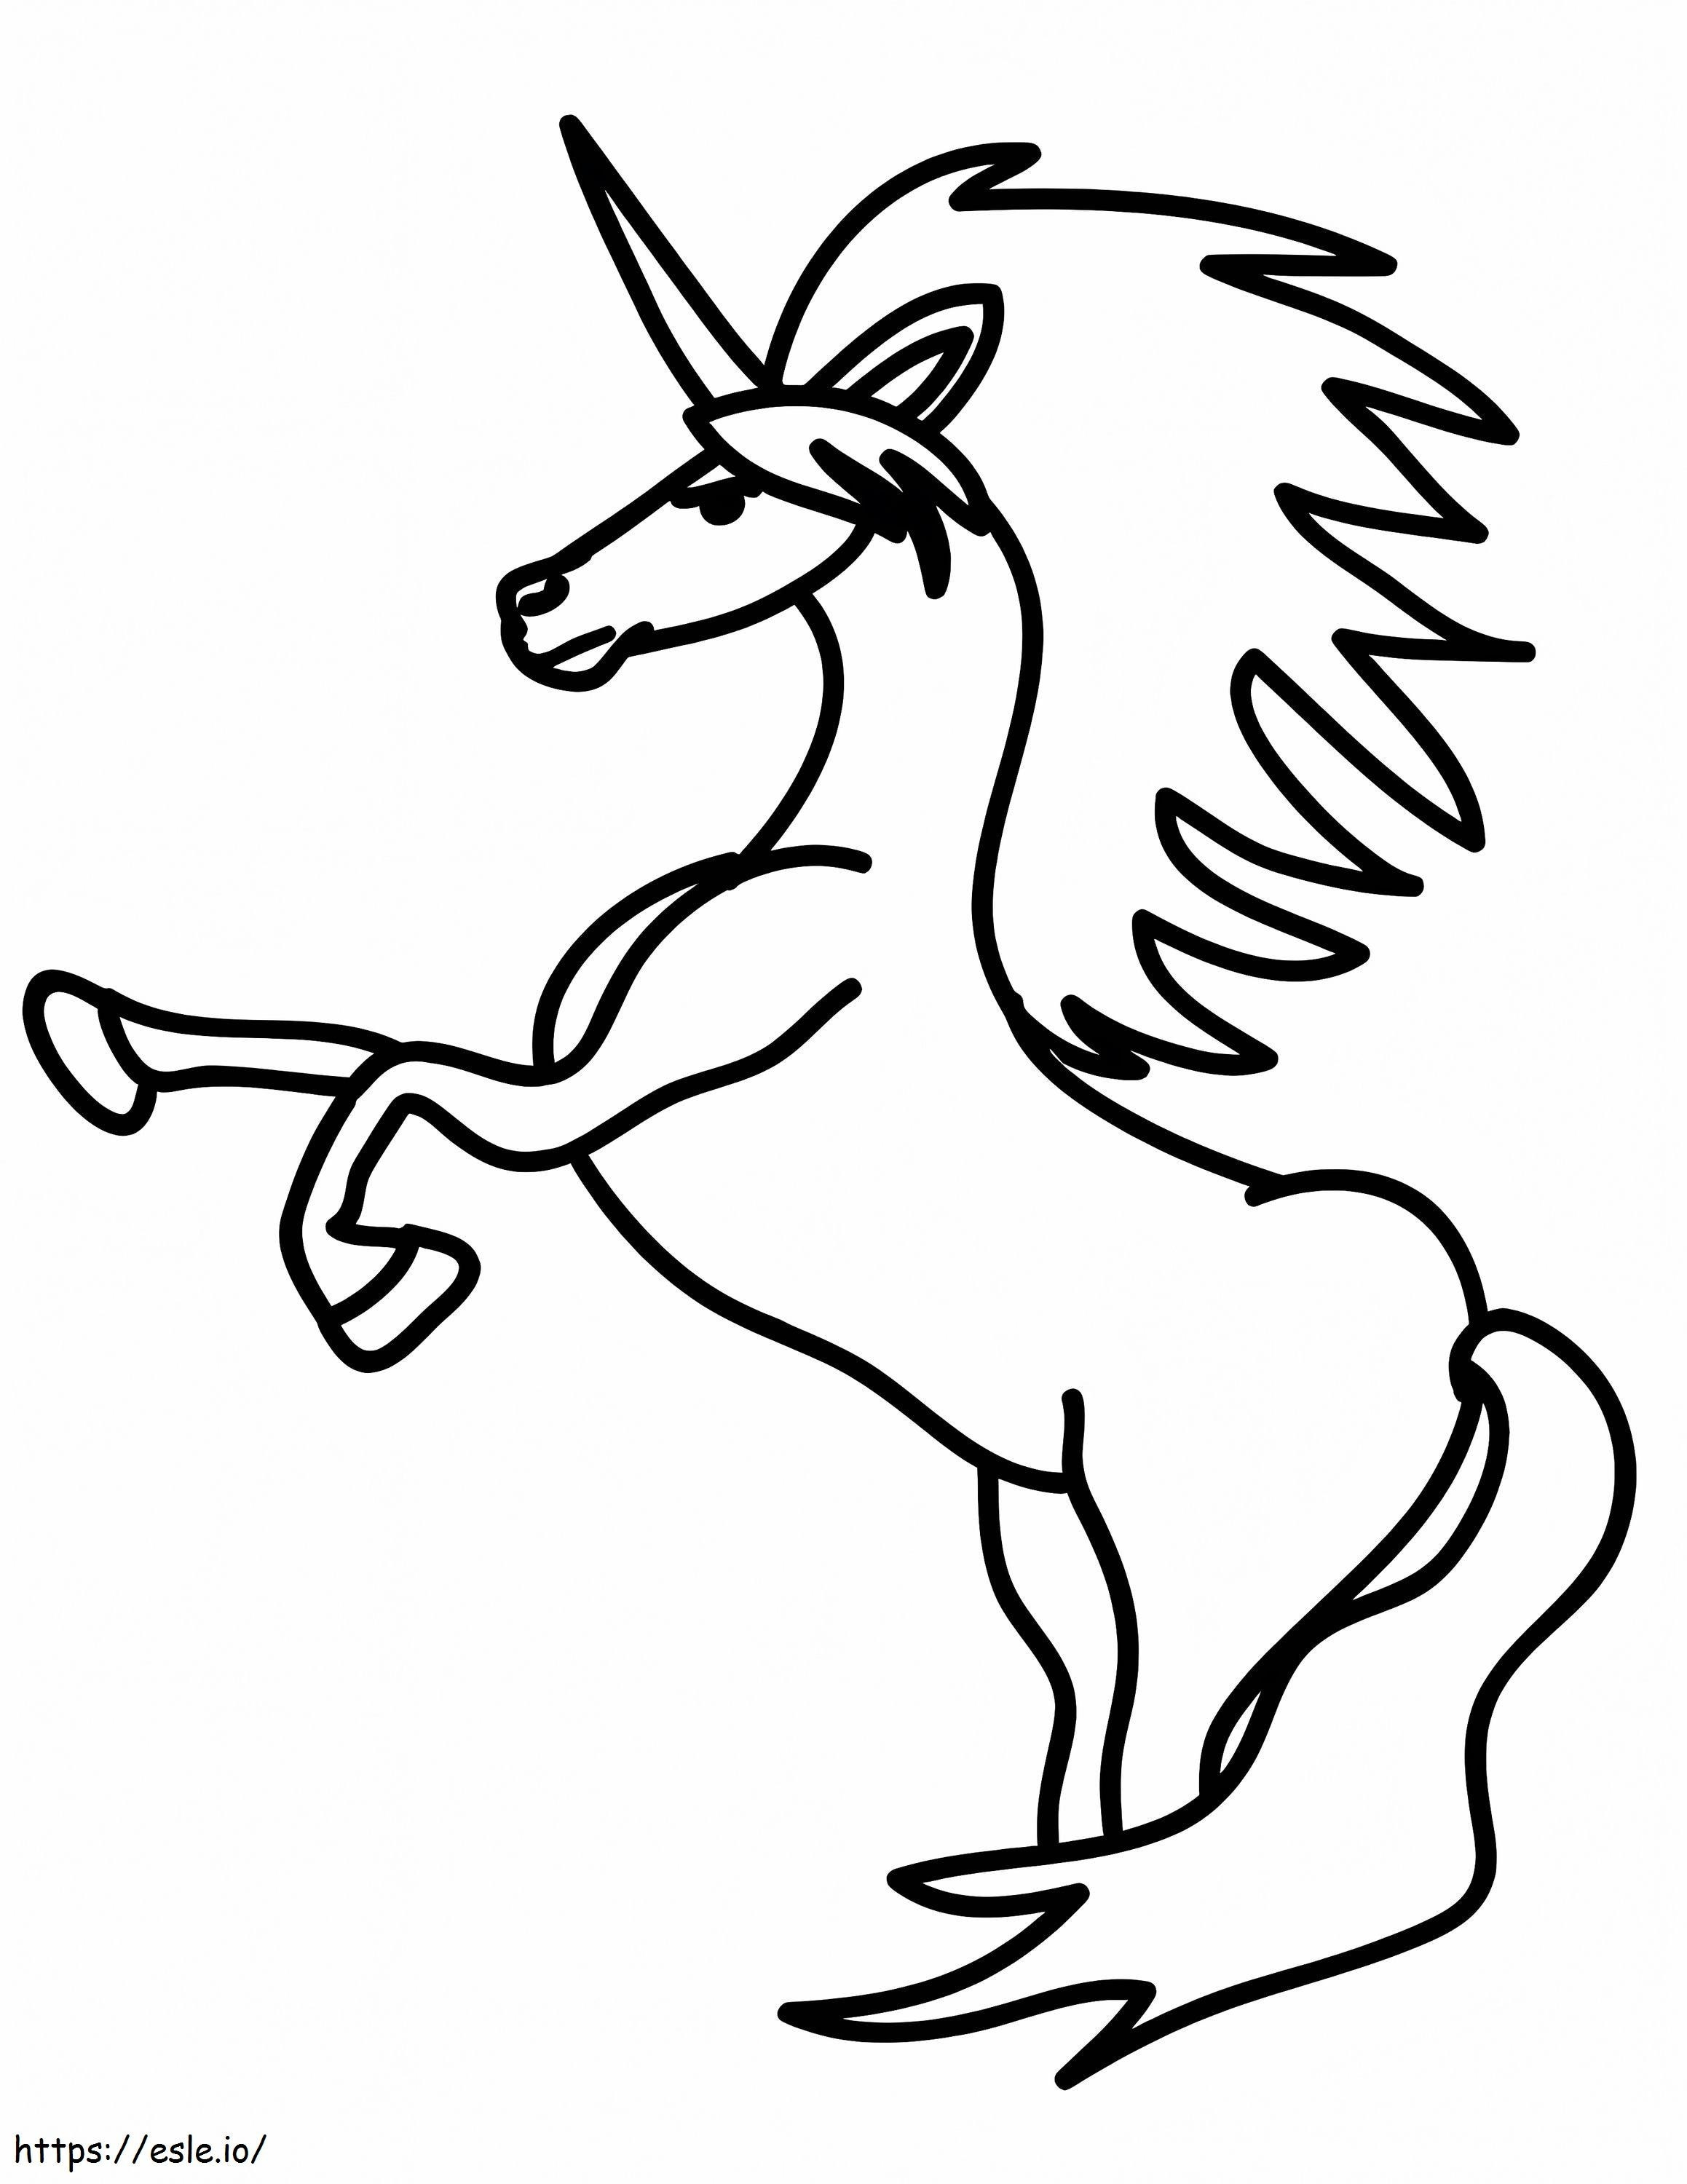 Simpatico unicorno 1 791X1024 da colorare